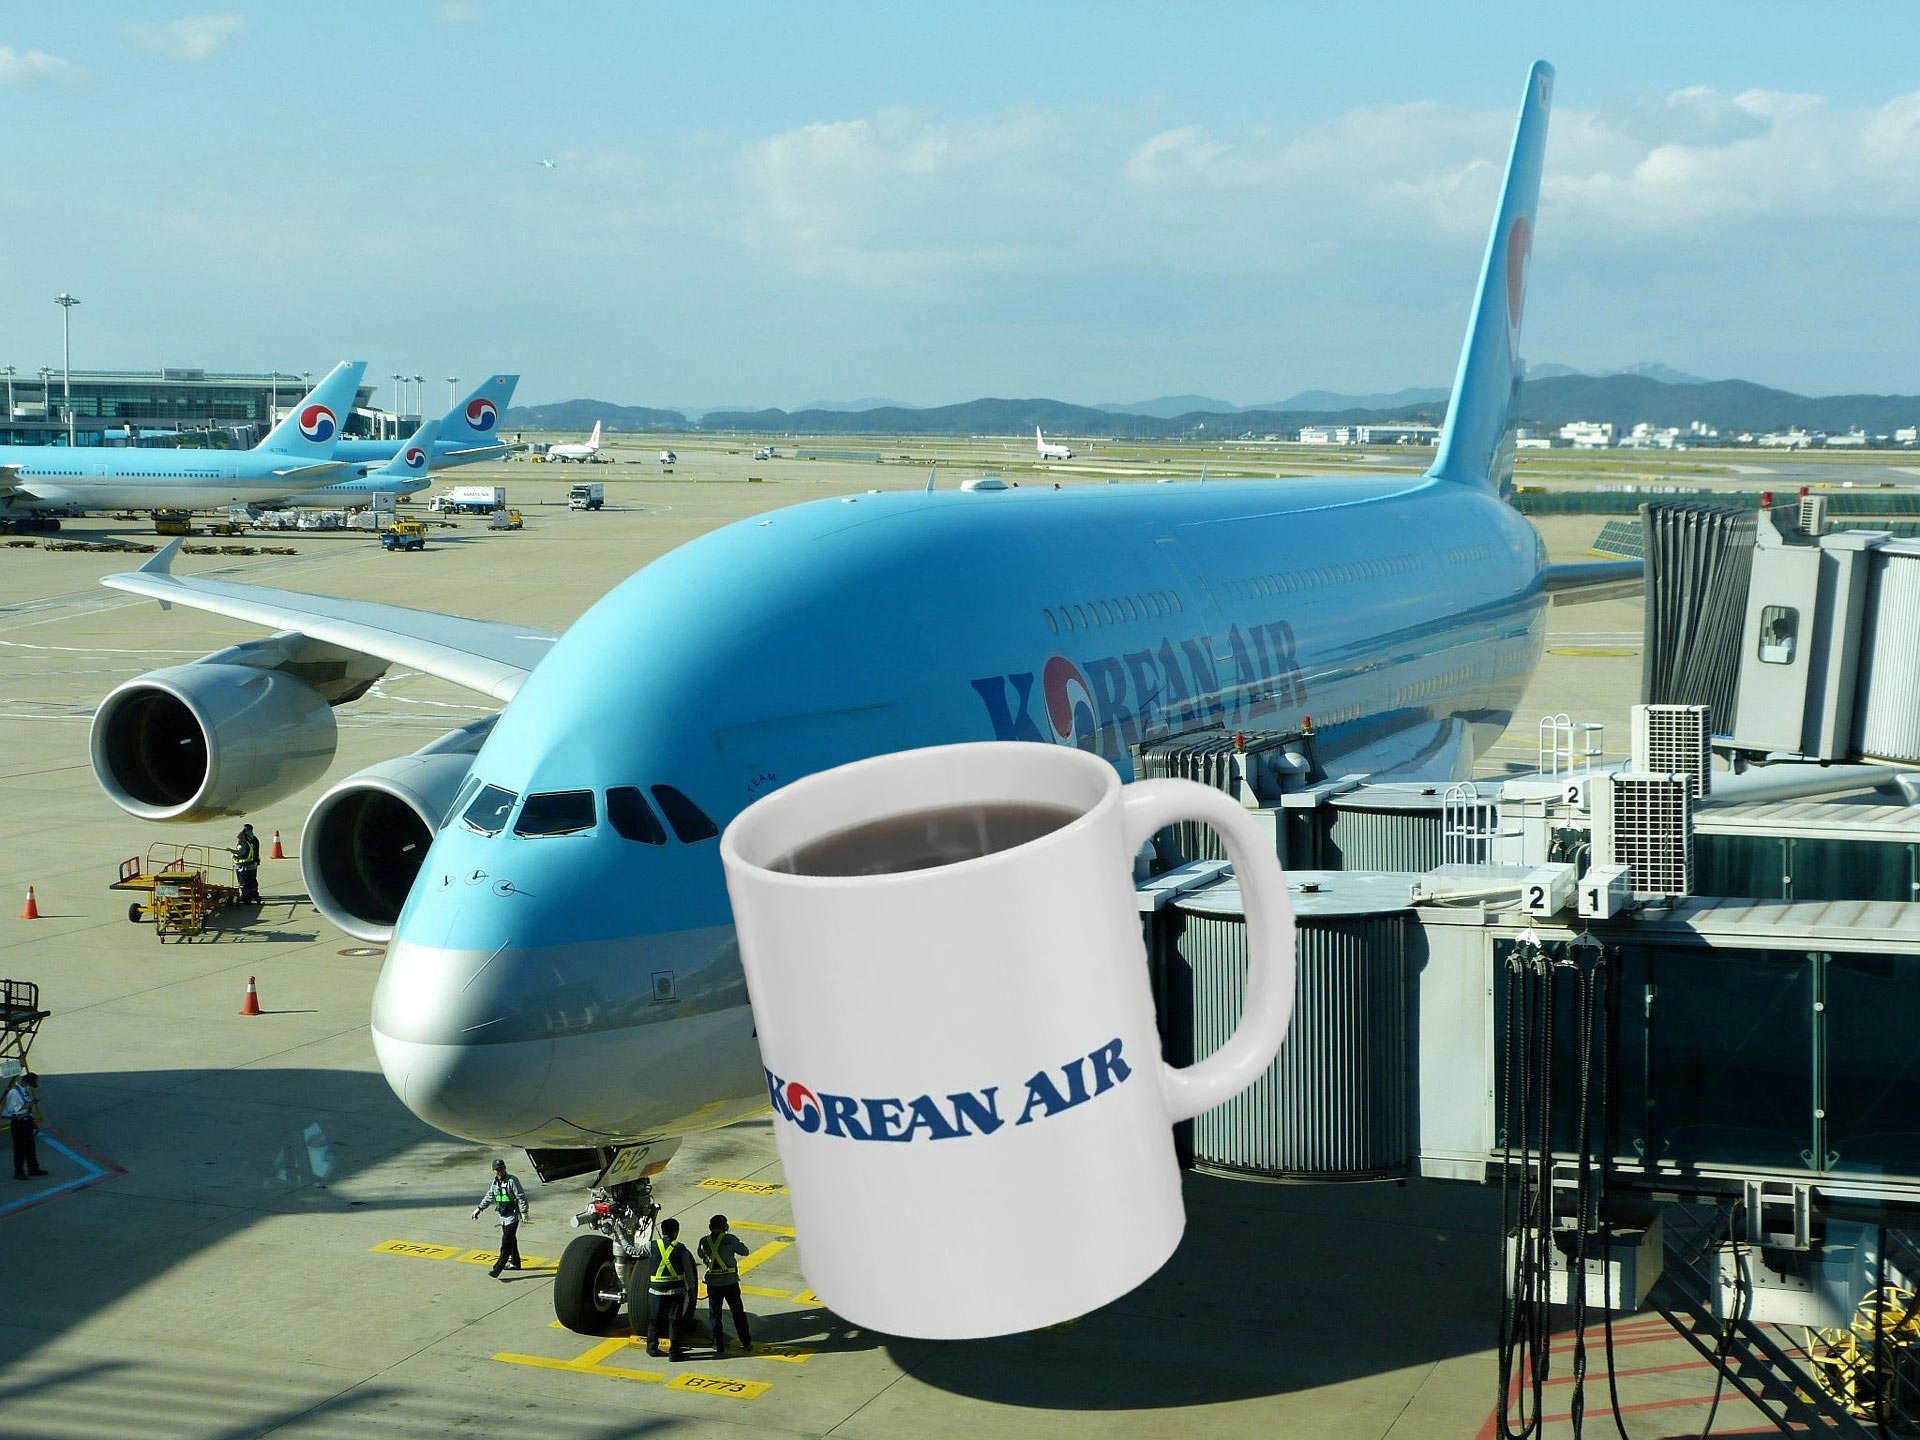 a coffee mug on a plane